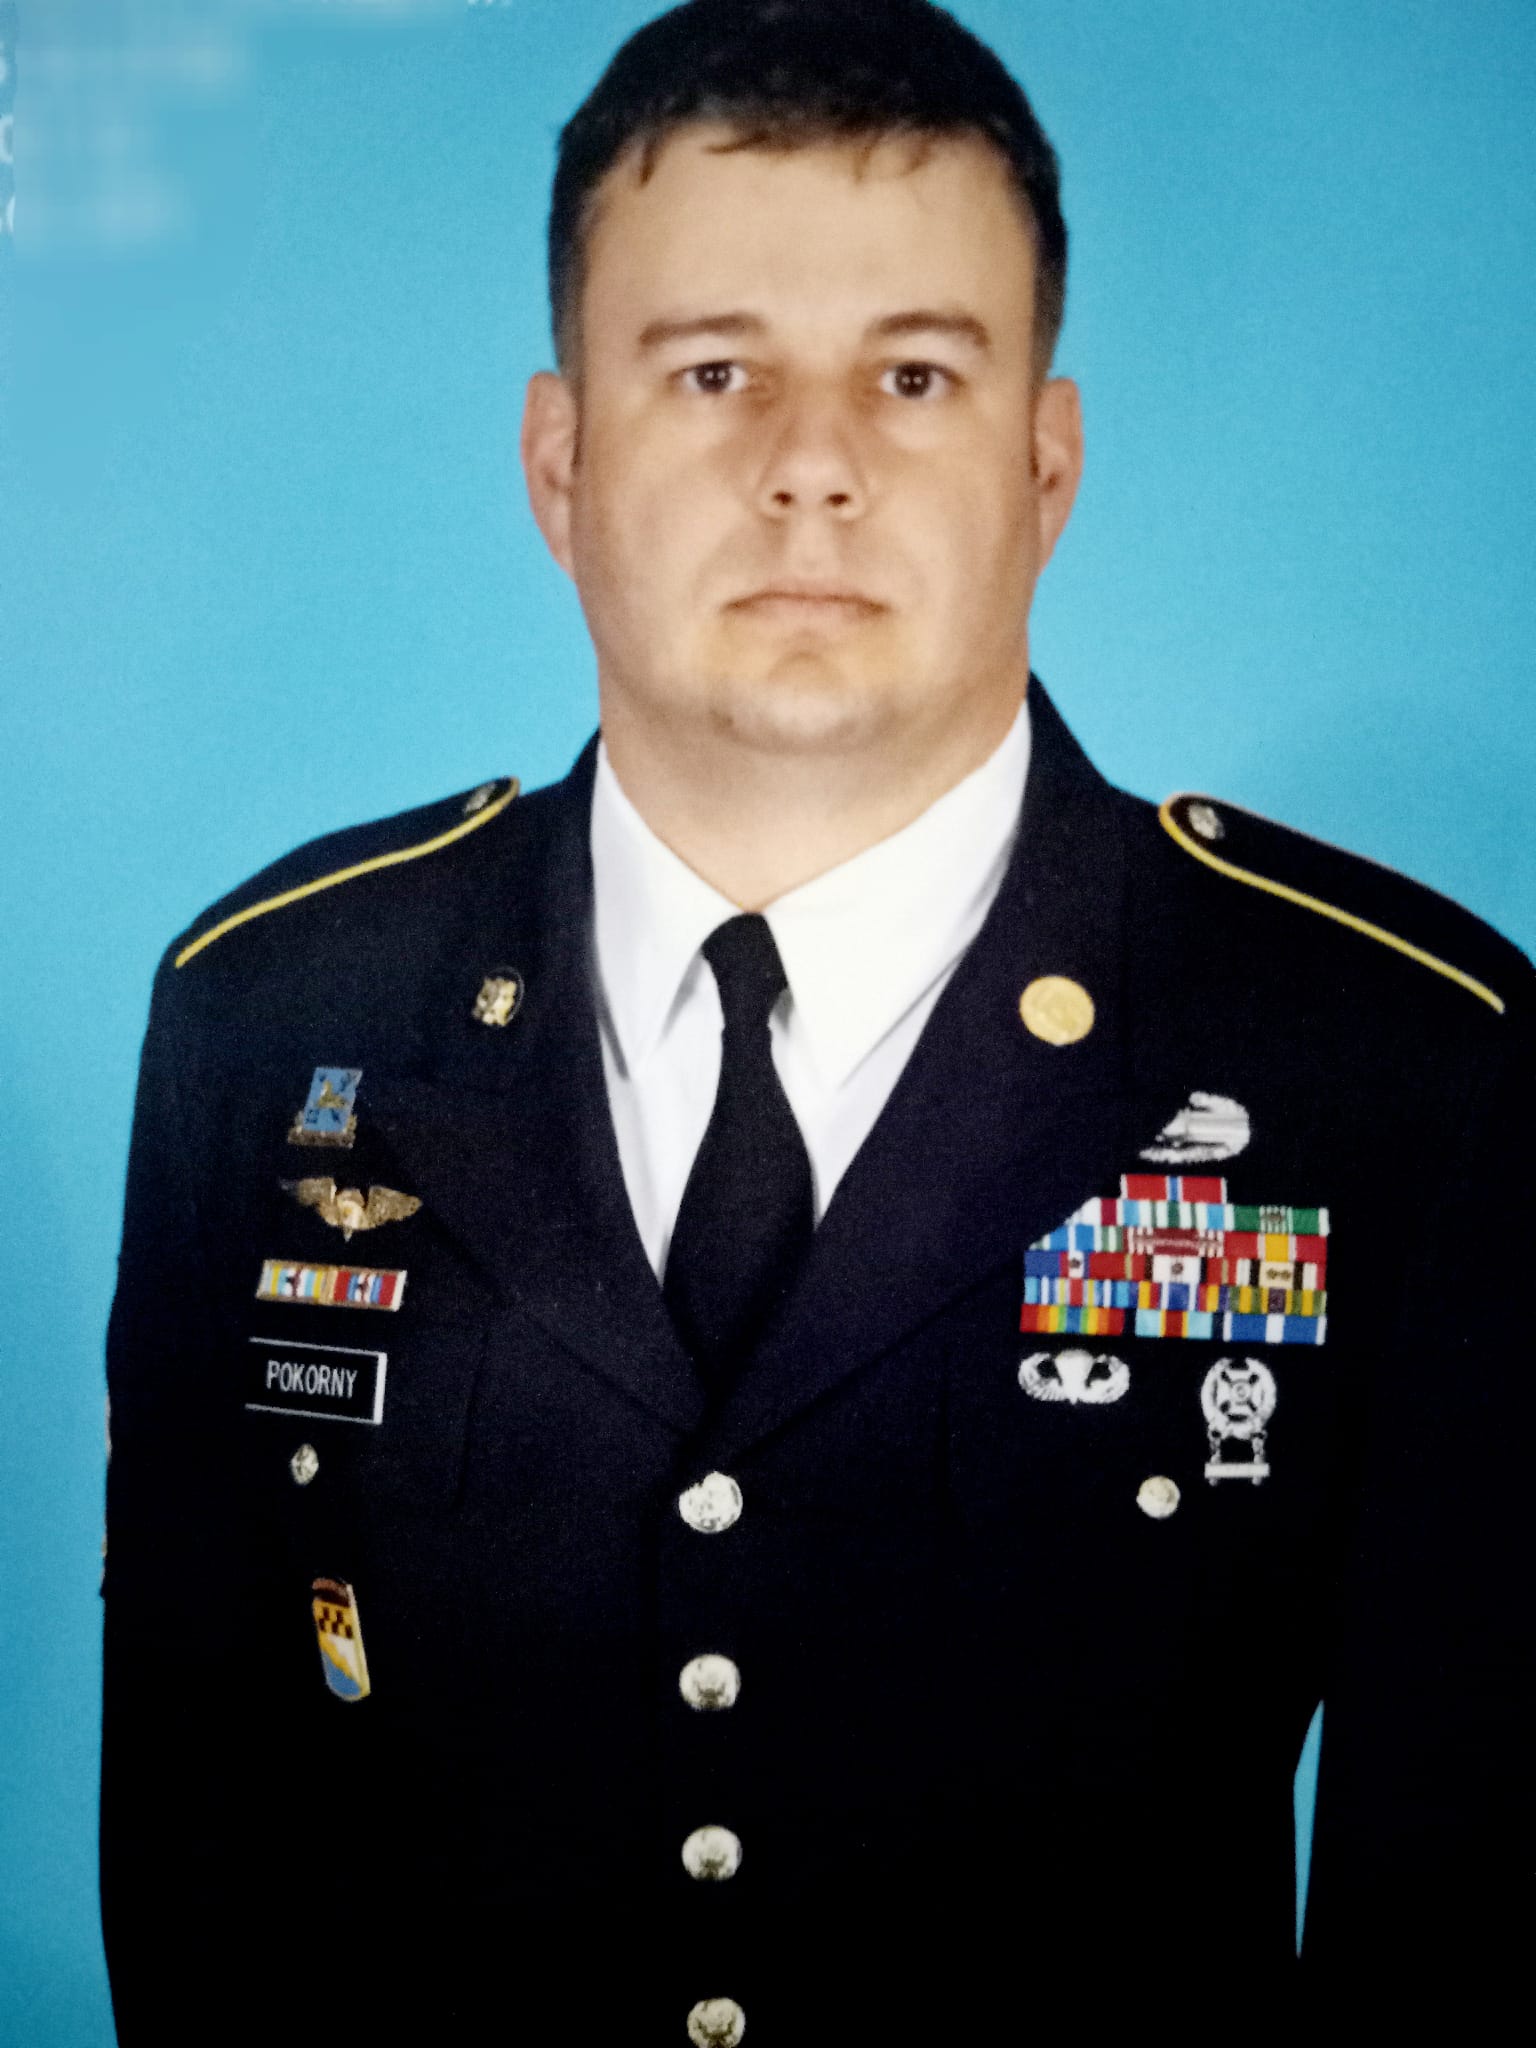 James M Pokorny, CW2, US Army